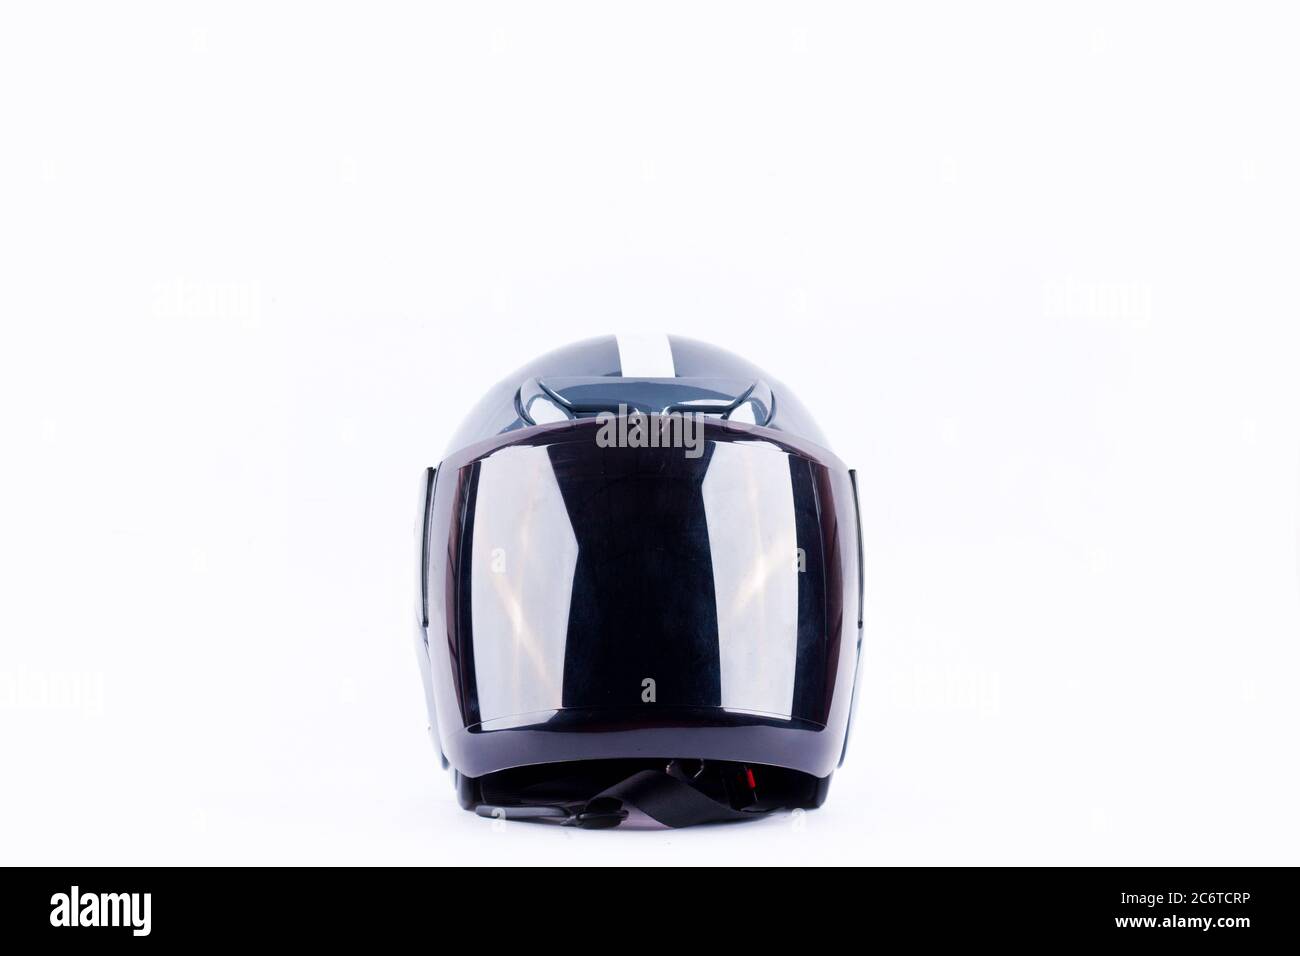 casque de moto sur fond blanc casque objet de sécurité isolé Banque D'Images